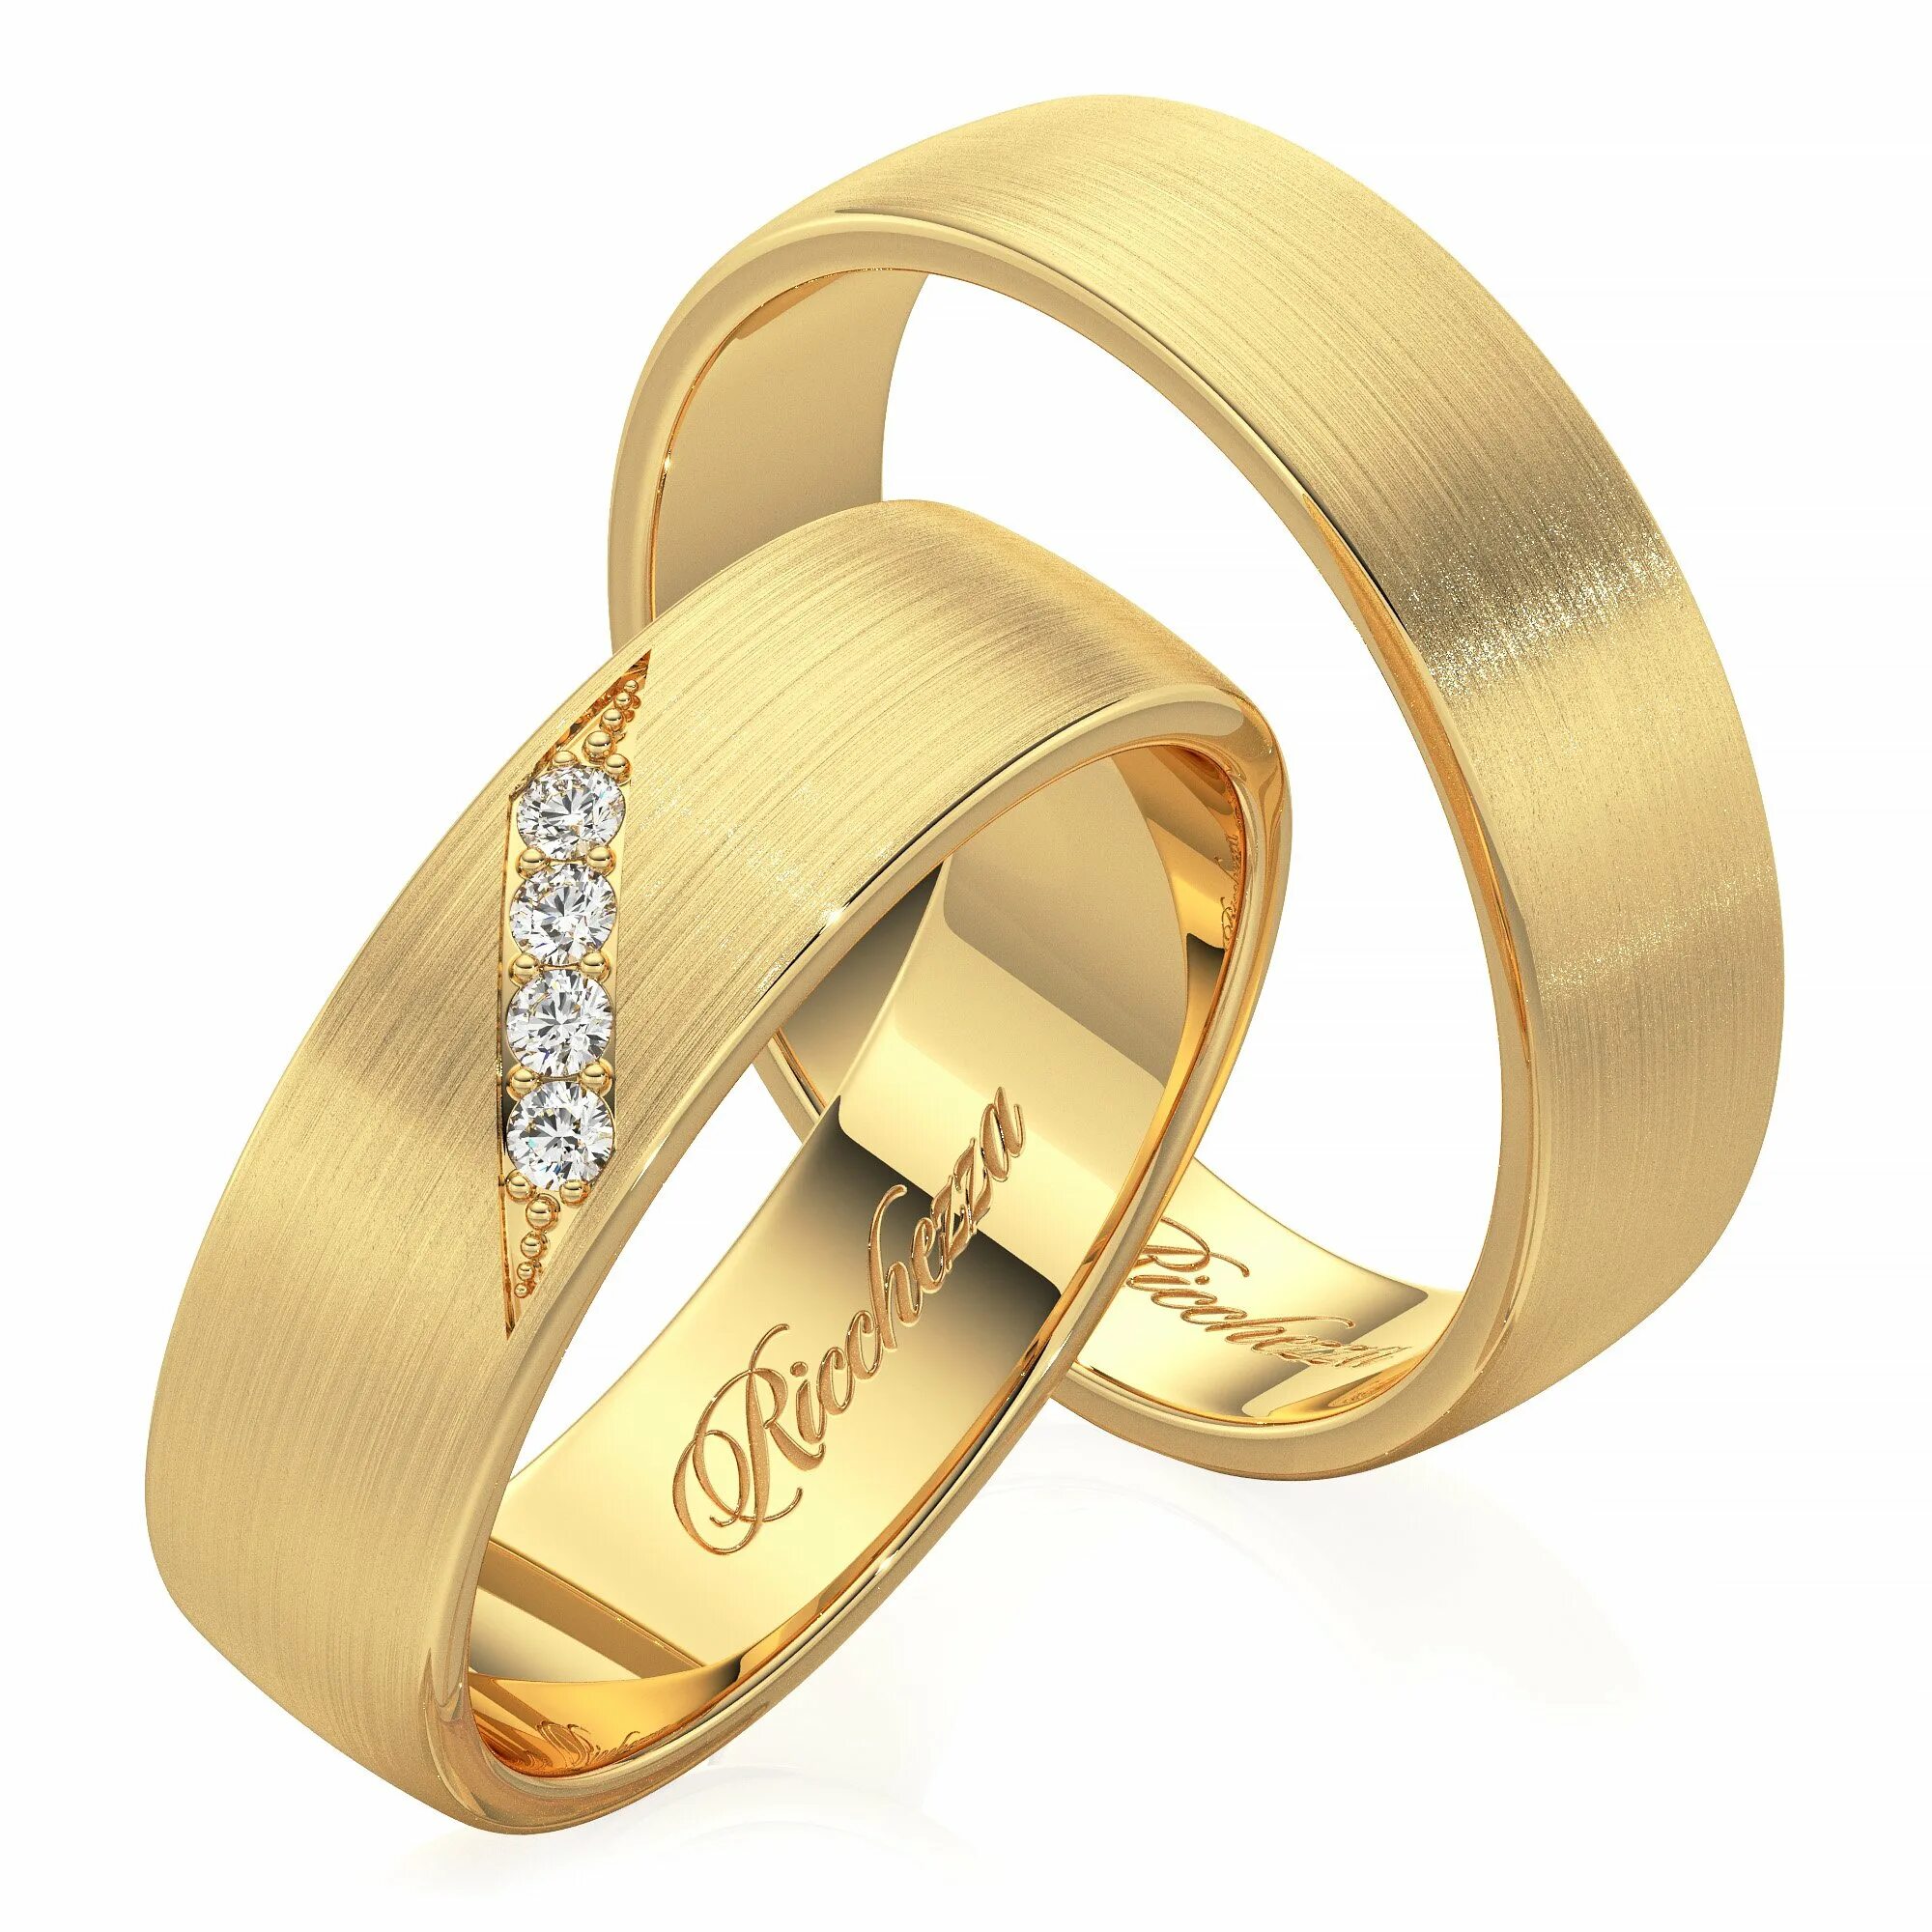 Золотое кольцо скидки. Кольца обручальные парные золотые Адамас. Обручальные кольца 585. Обручальные кольца парные 585. Золотые кольца обручалки 585 пробы.